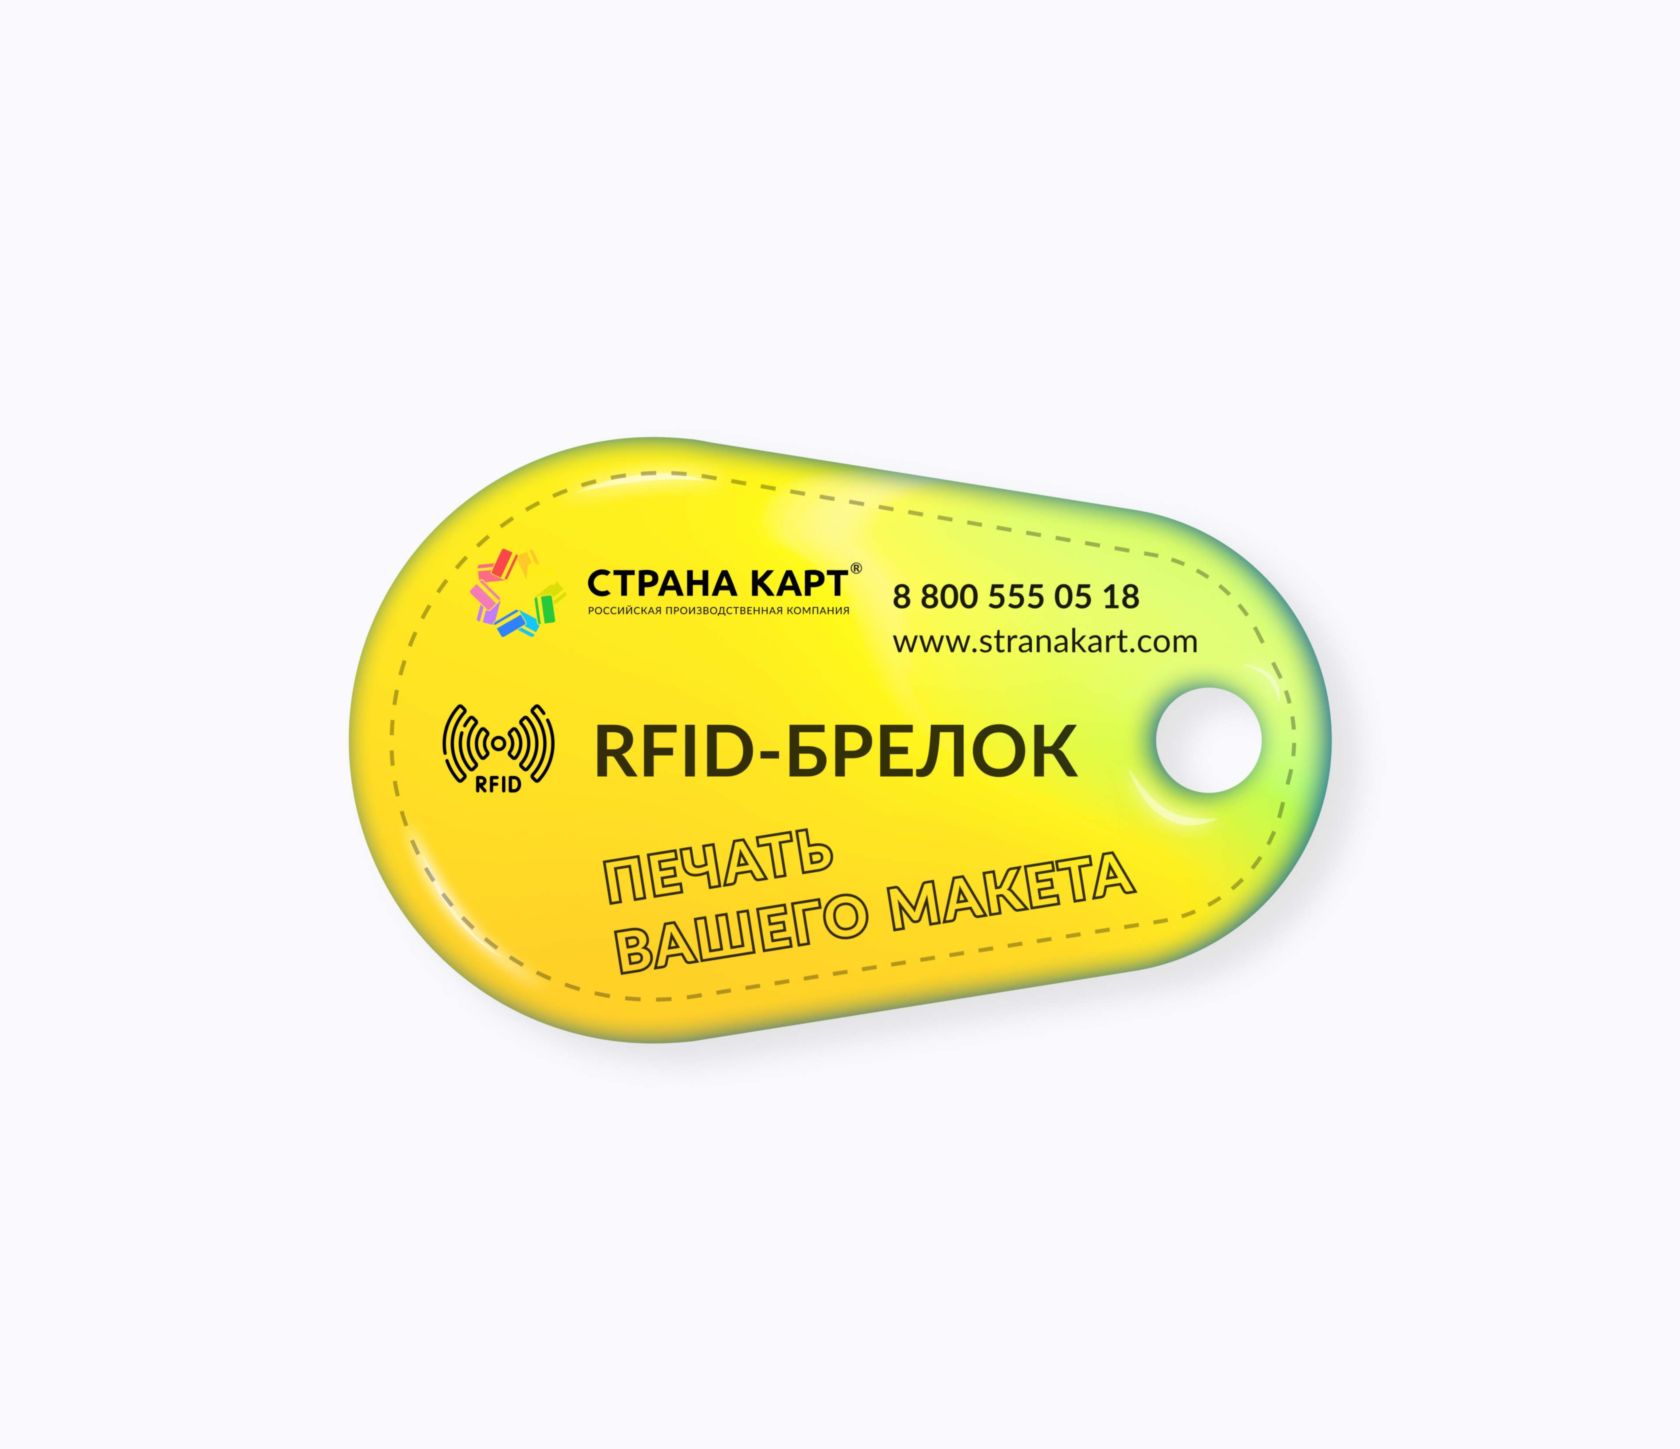 Каплевидные RFID-брелоки NEOKEY® с чипом для батутных парков RFID-брелоки NEOKEY® с чипом для батутных парков